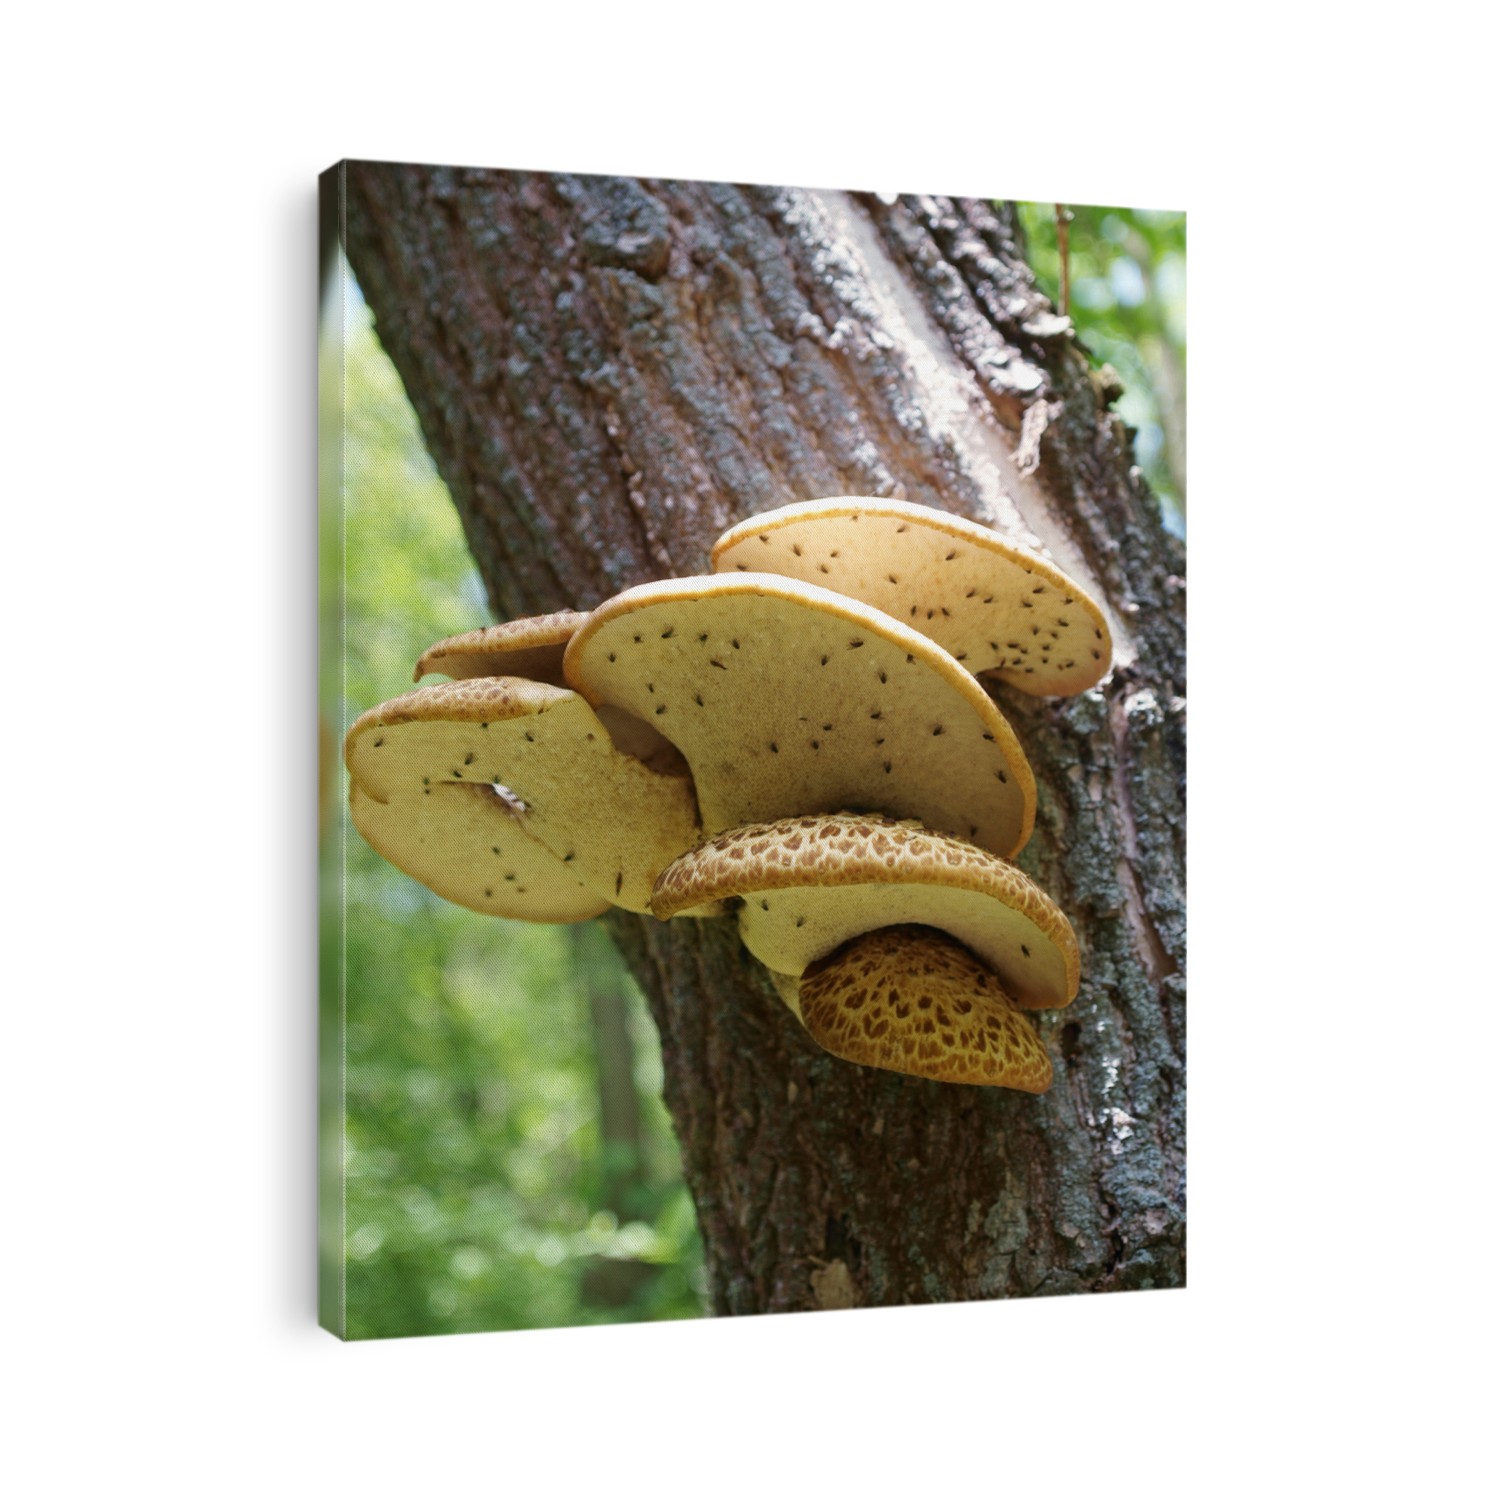 Polyporus squamosus. Mushrooms on tree.